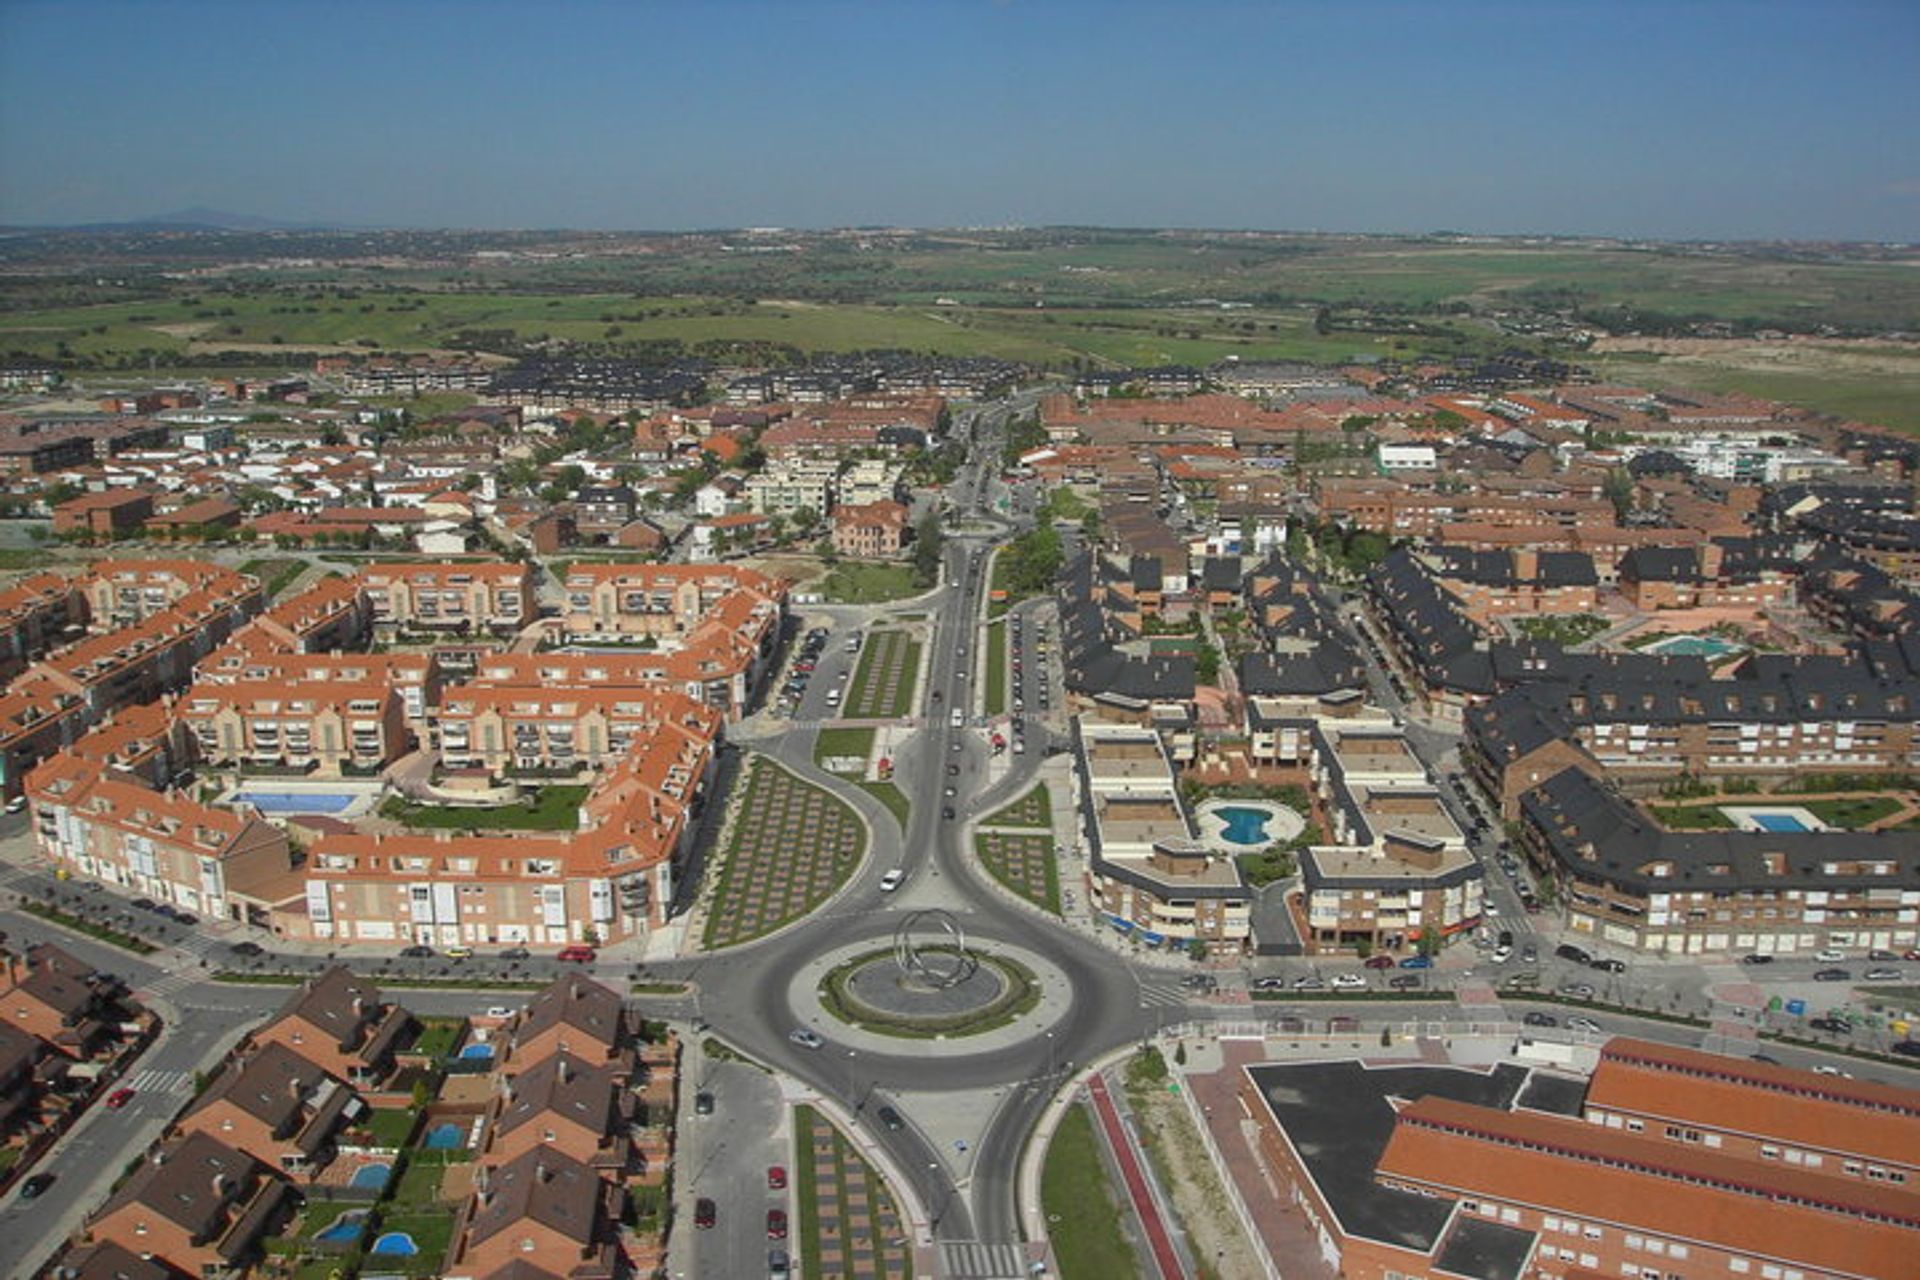 Vista aerea di Villanueva del Pardillo, località nei sobborghi di Madrid, la quale si presta bene ai "super isolati"